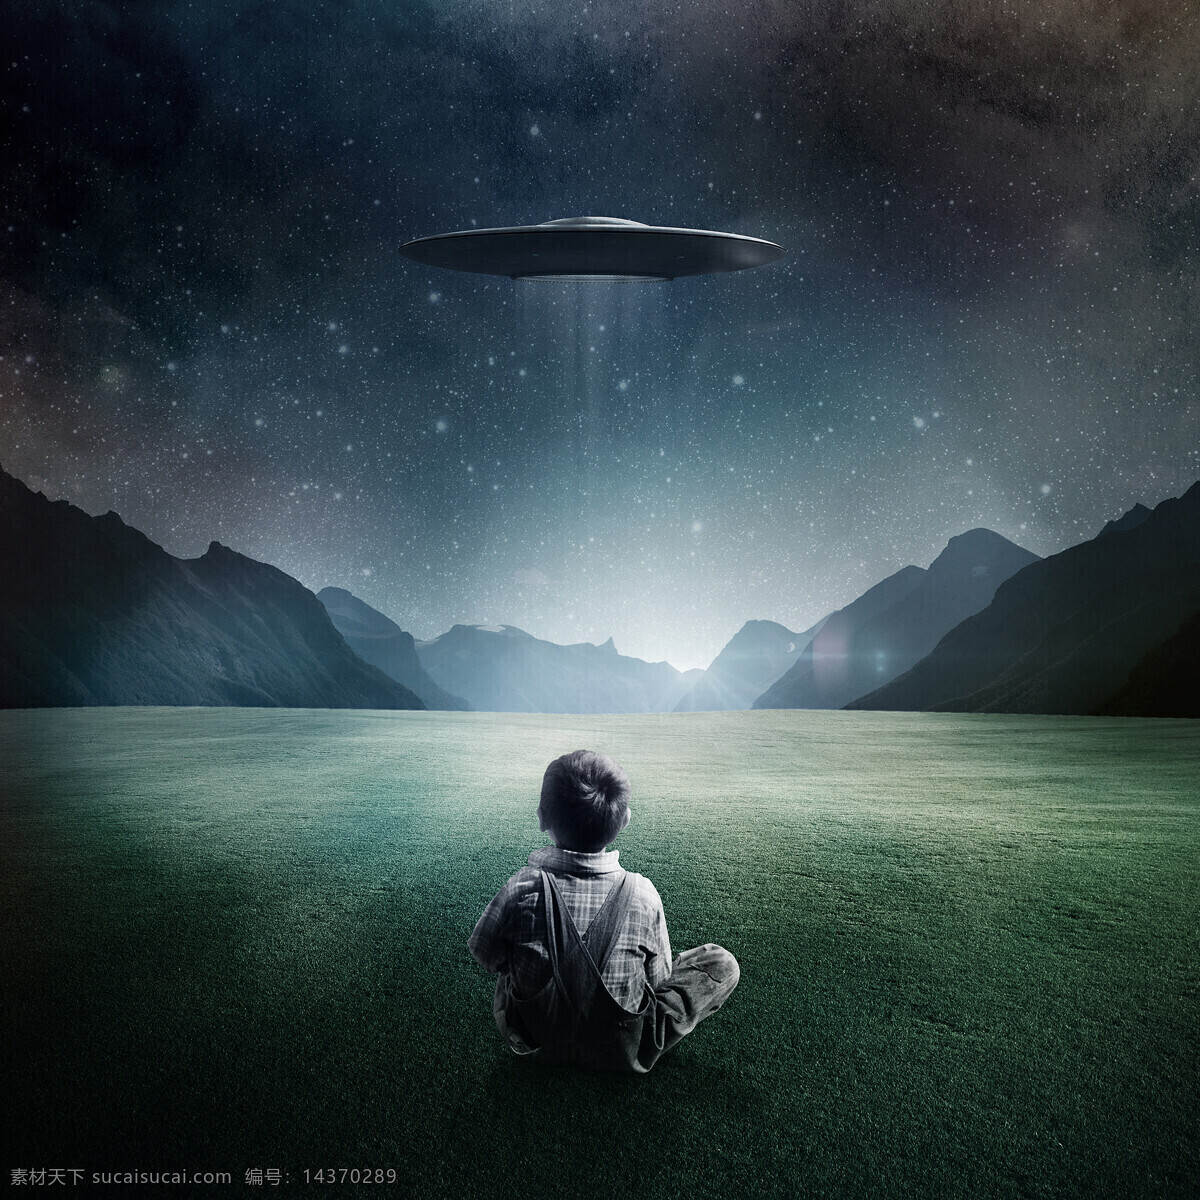 远望 ufo 飞碟 小孩 仰望 星空 山脉 生活人物 人物图库